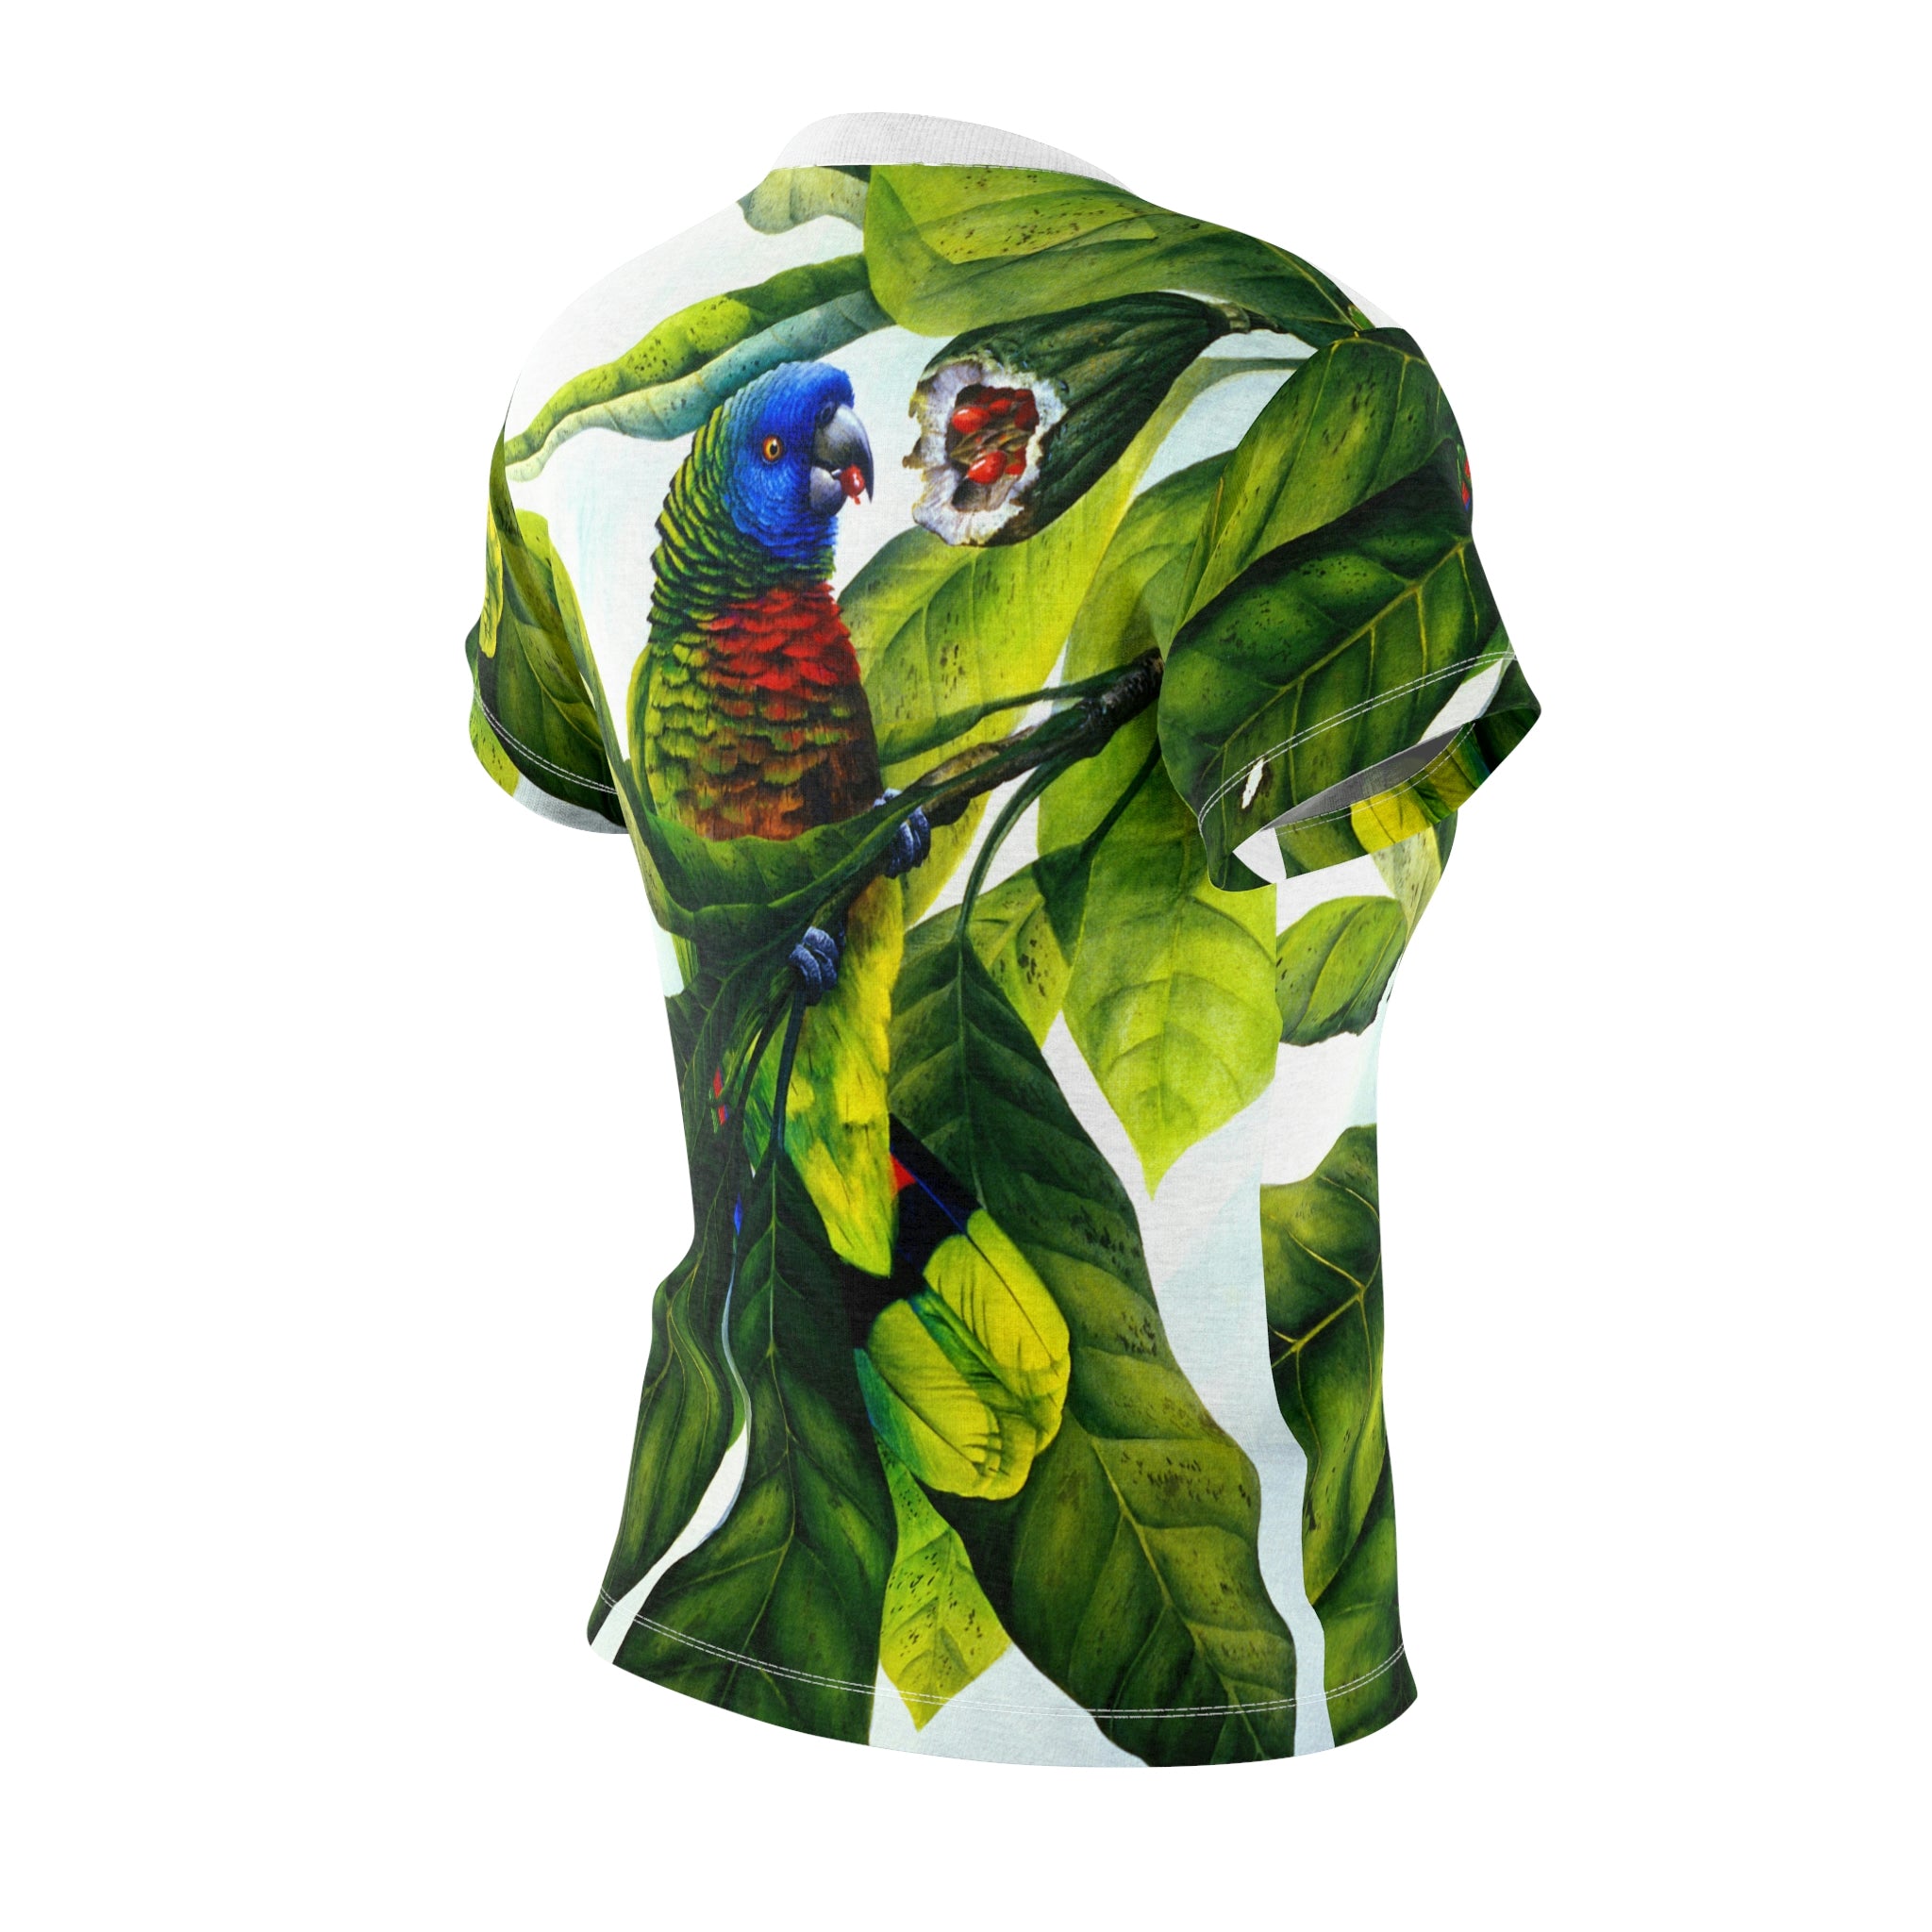 Saint Lucia Parrot All Over Print Womens Tee, Parrot shirt, Tropical bird shirt, AOP shirt, Microfibre shirt, Original artwork